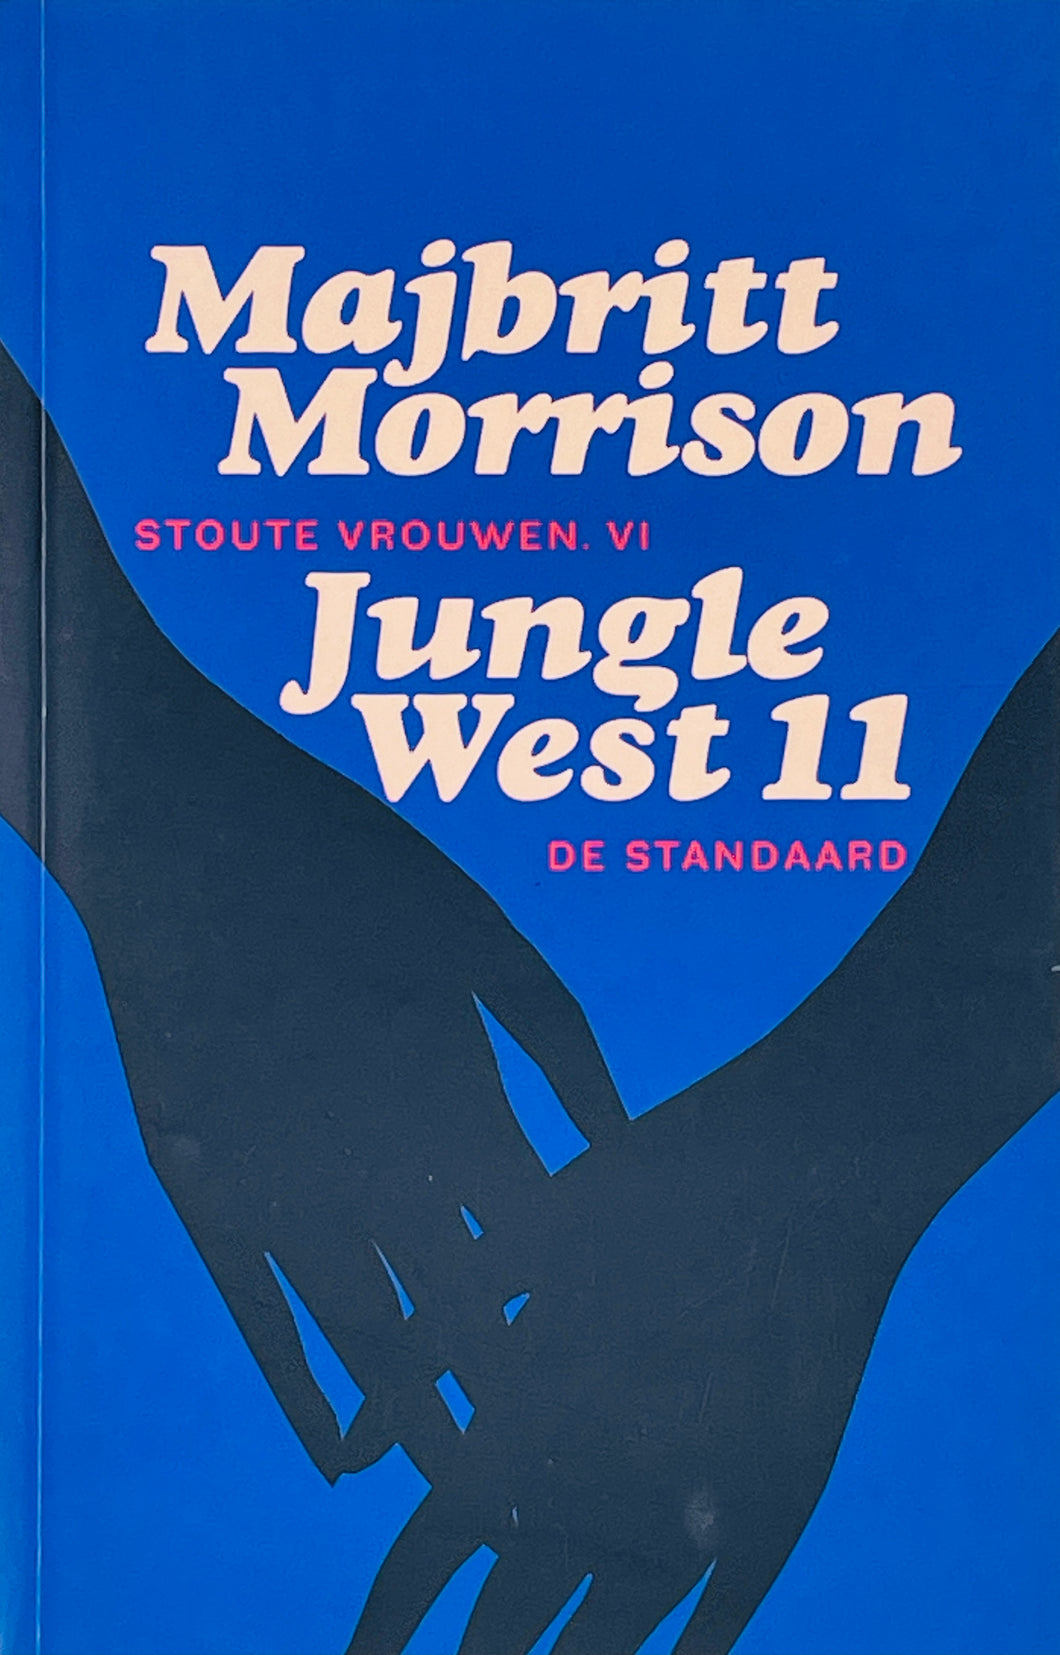 Morrison Majbritt - Jungle west 11